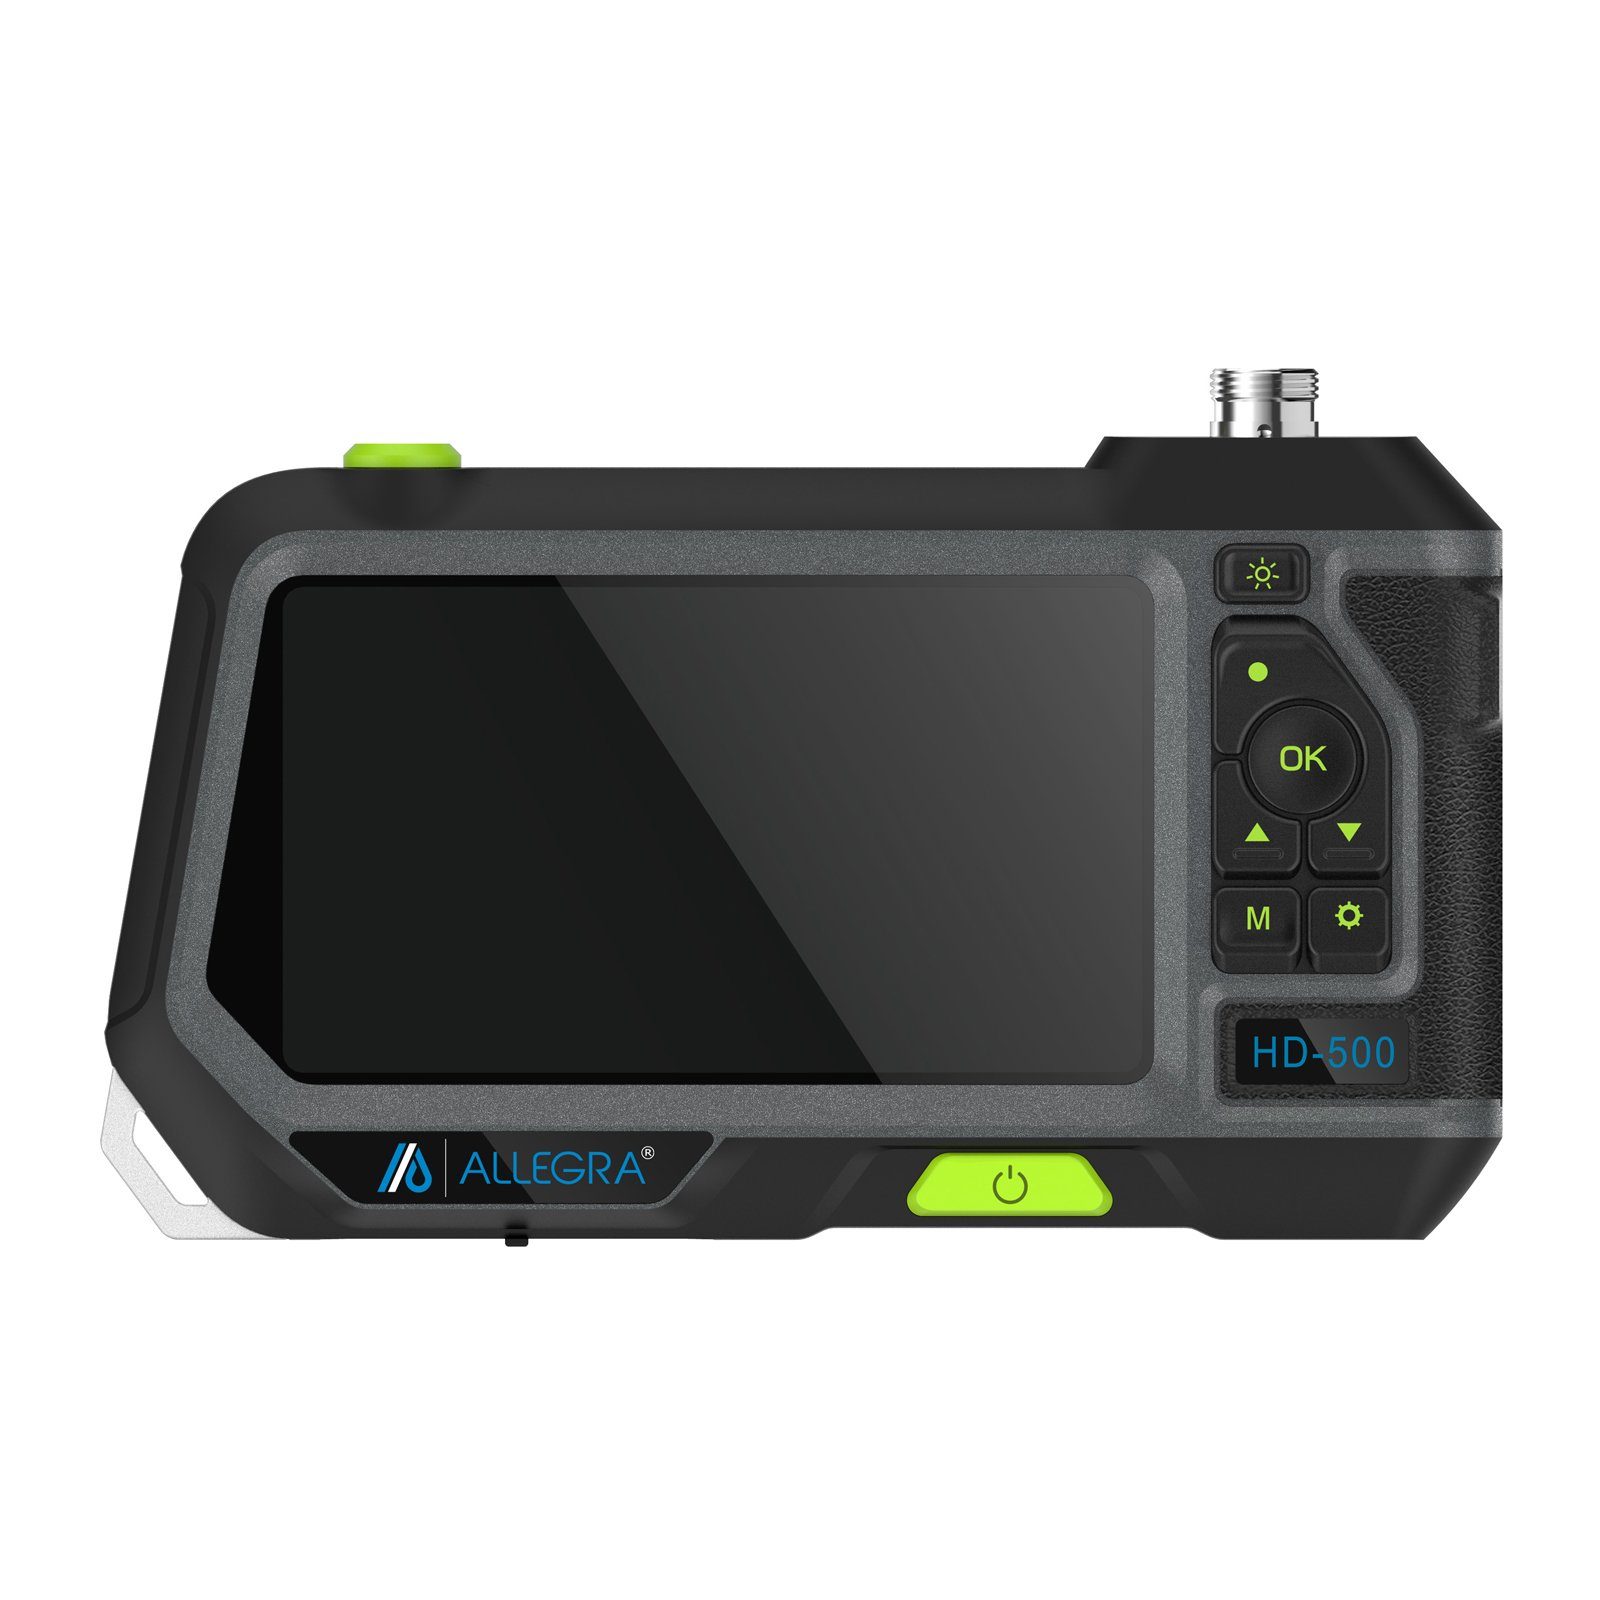 Dualkopf - HD-500 Endoskop ALLEGRA ALLEGRA Kamerasonde mit 3m Inspektionskamera